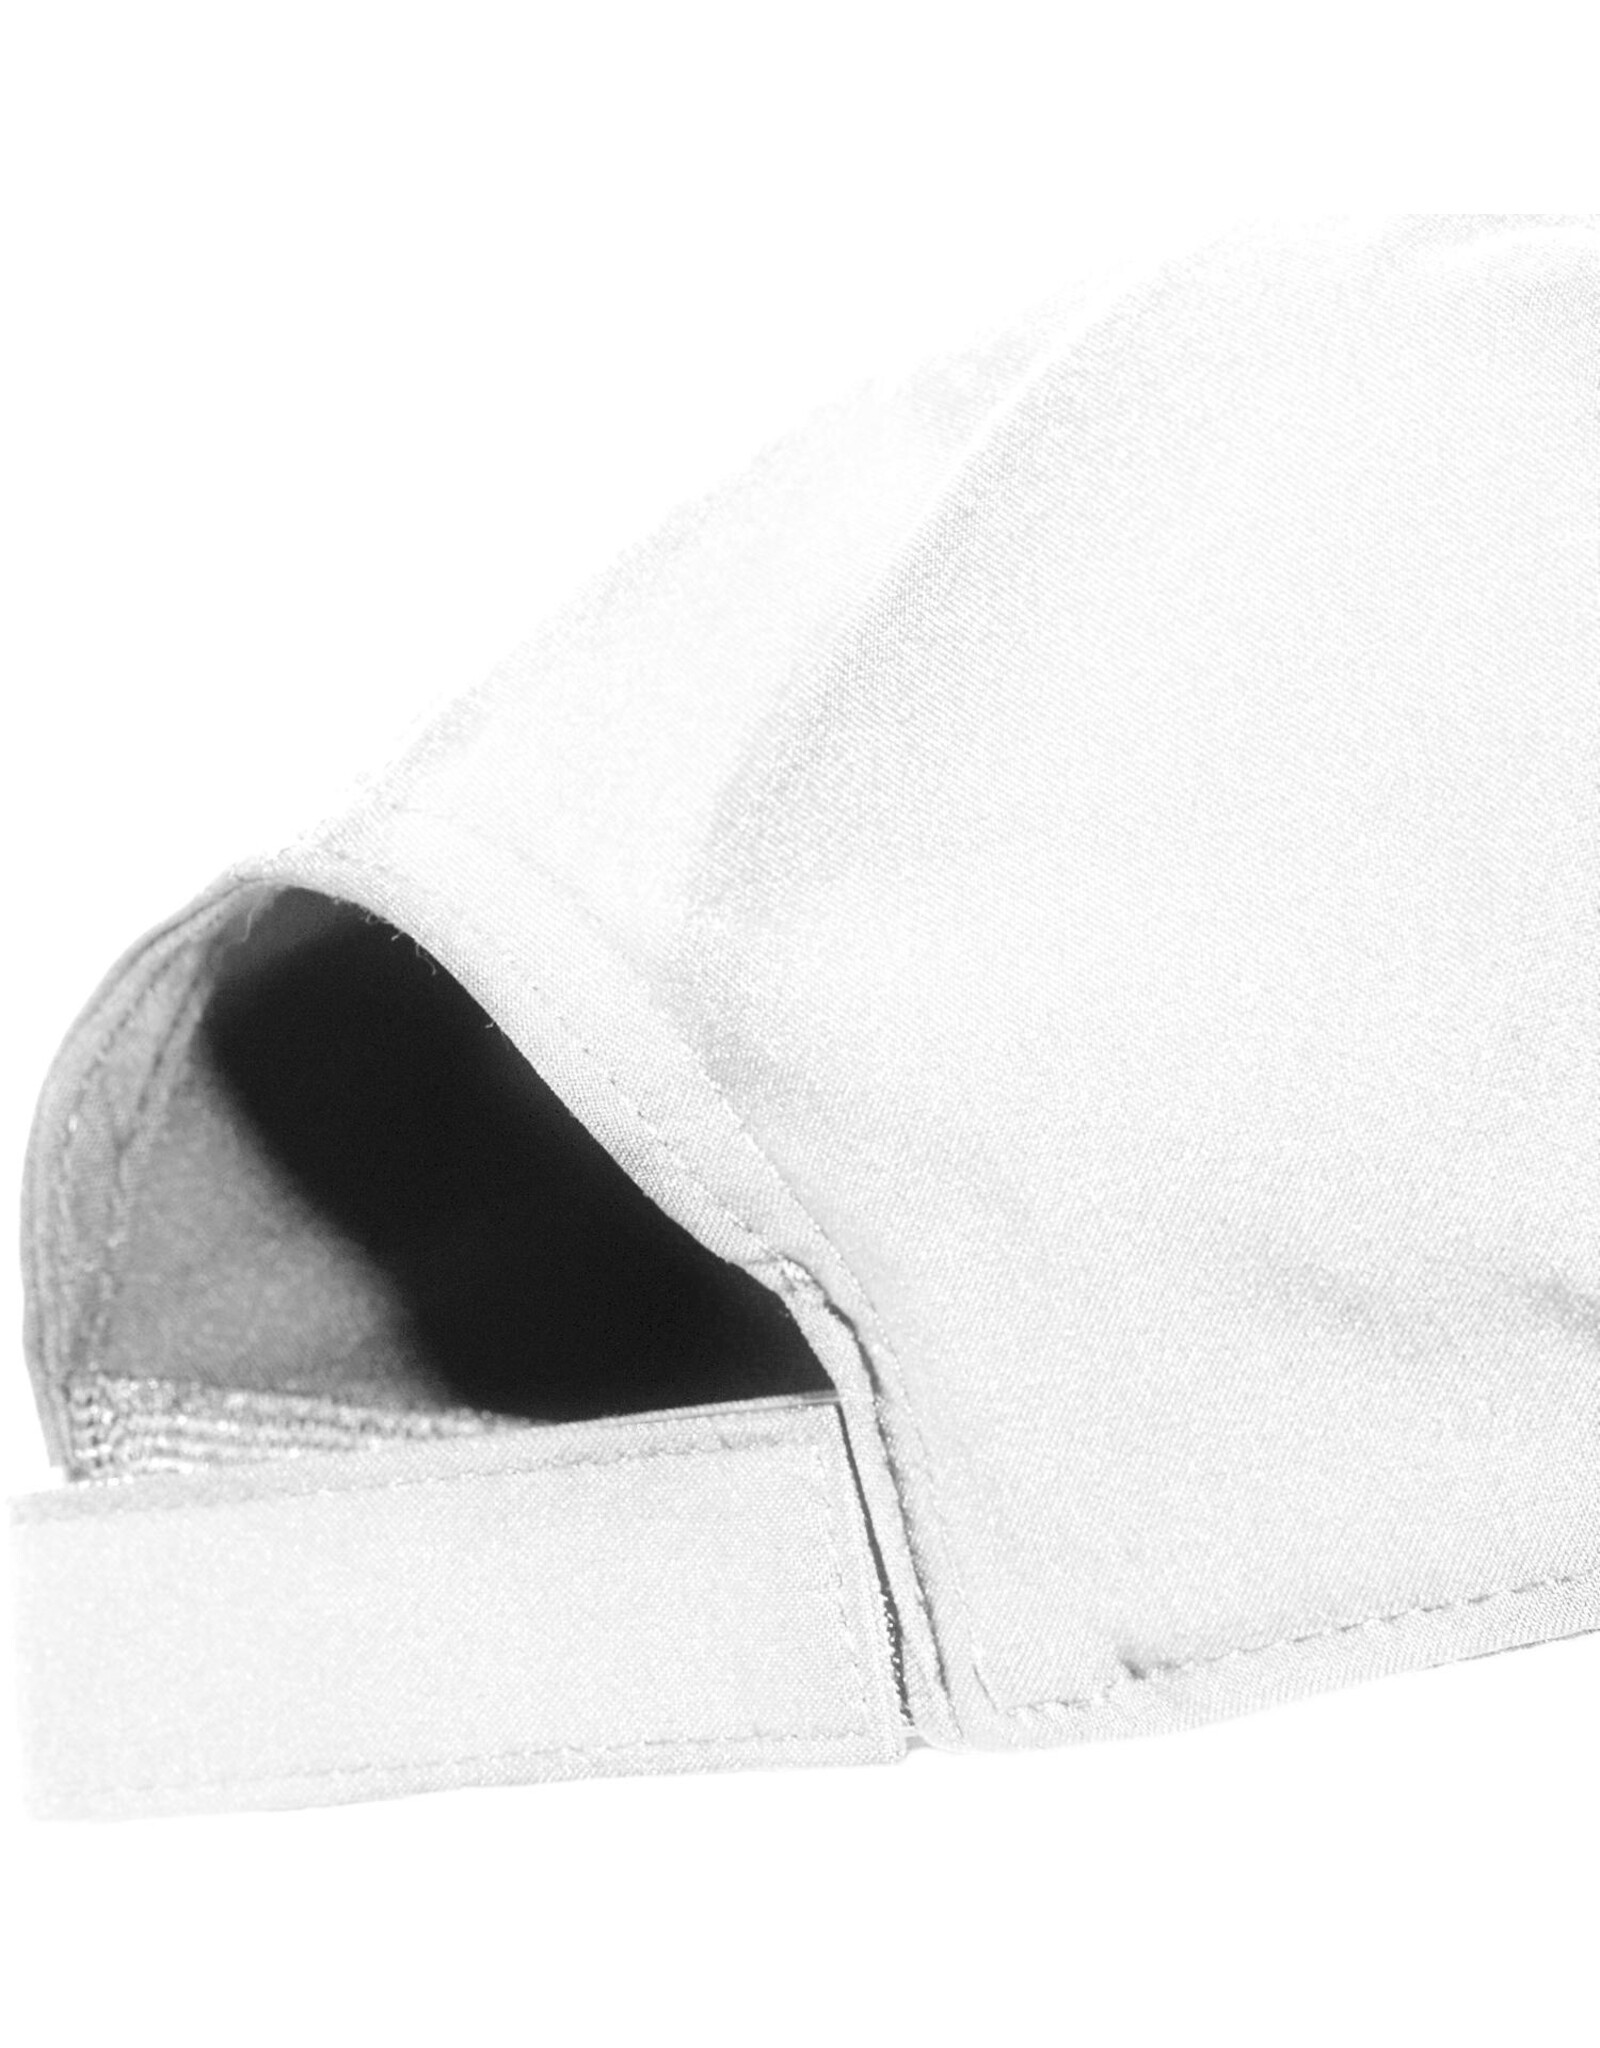 Asics ESNT CAP-BRILLIANT WHITE